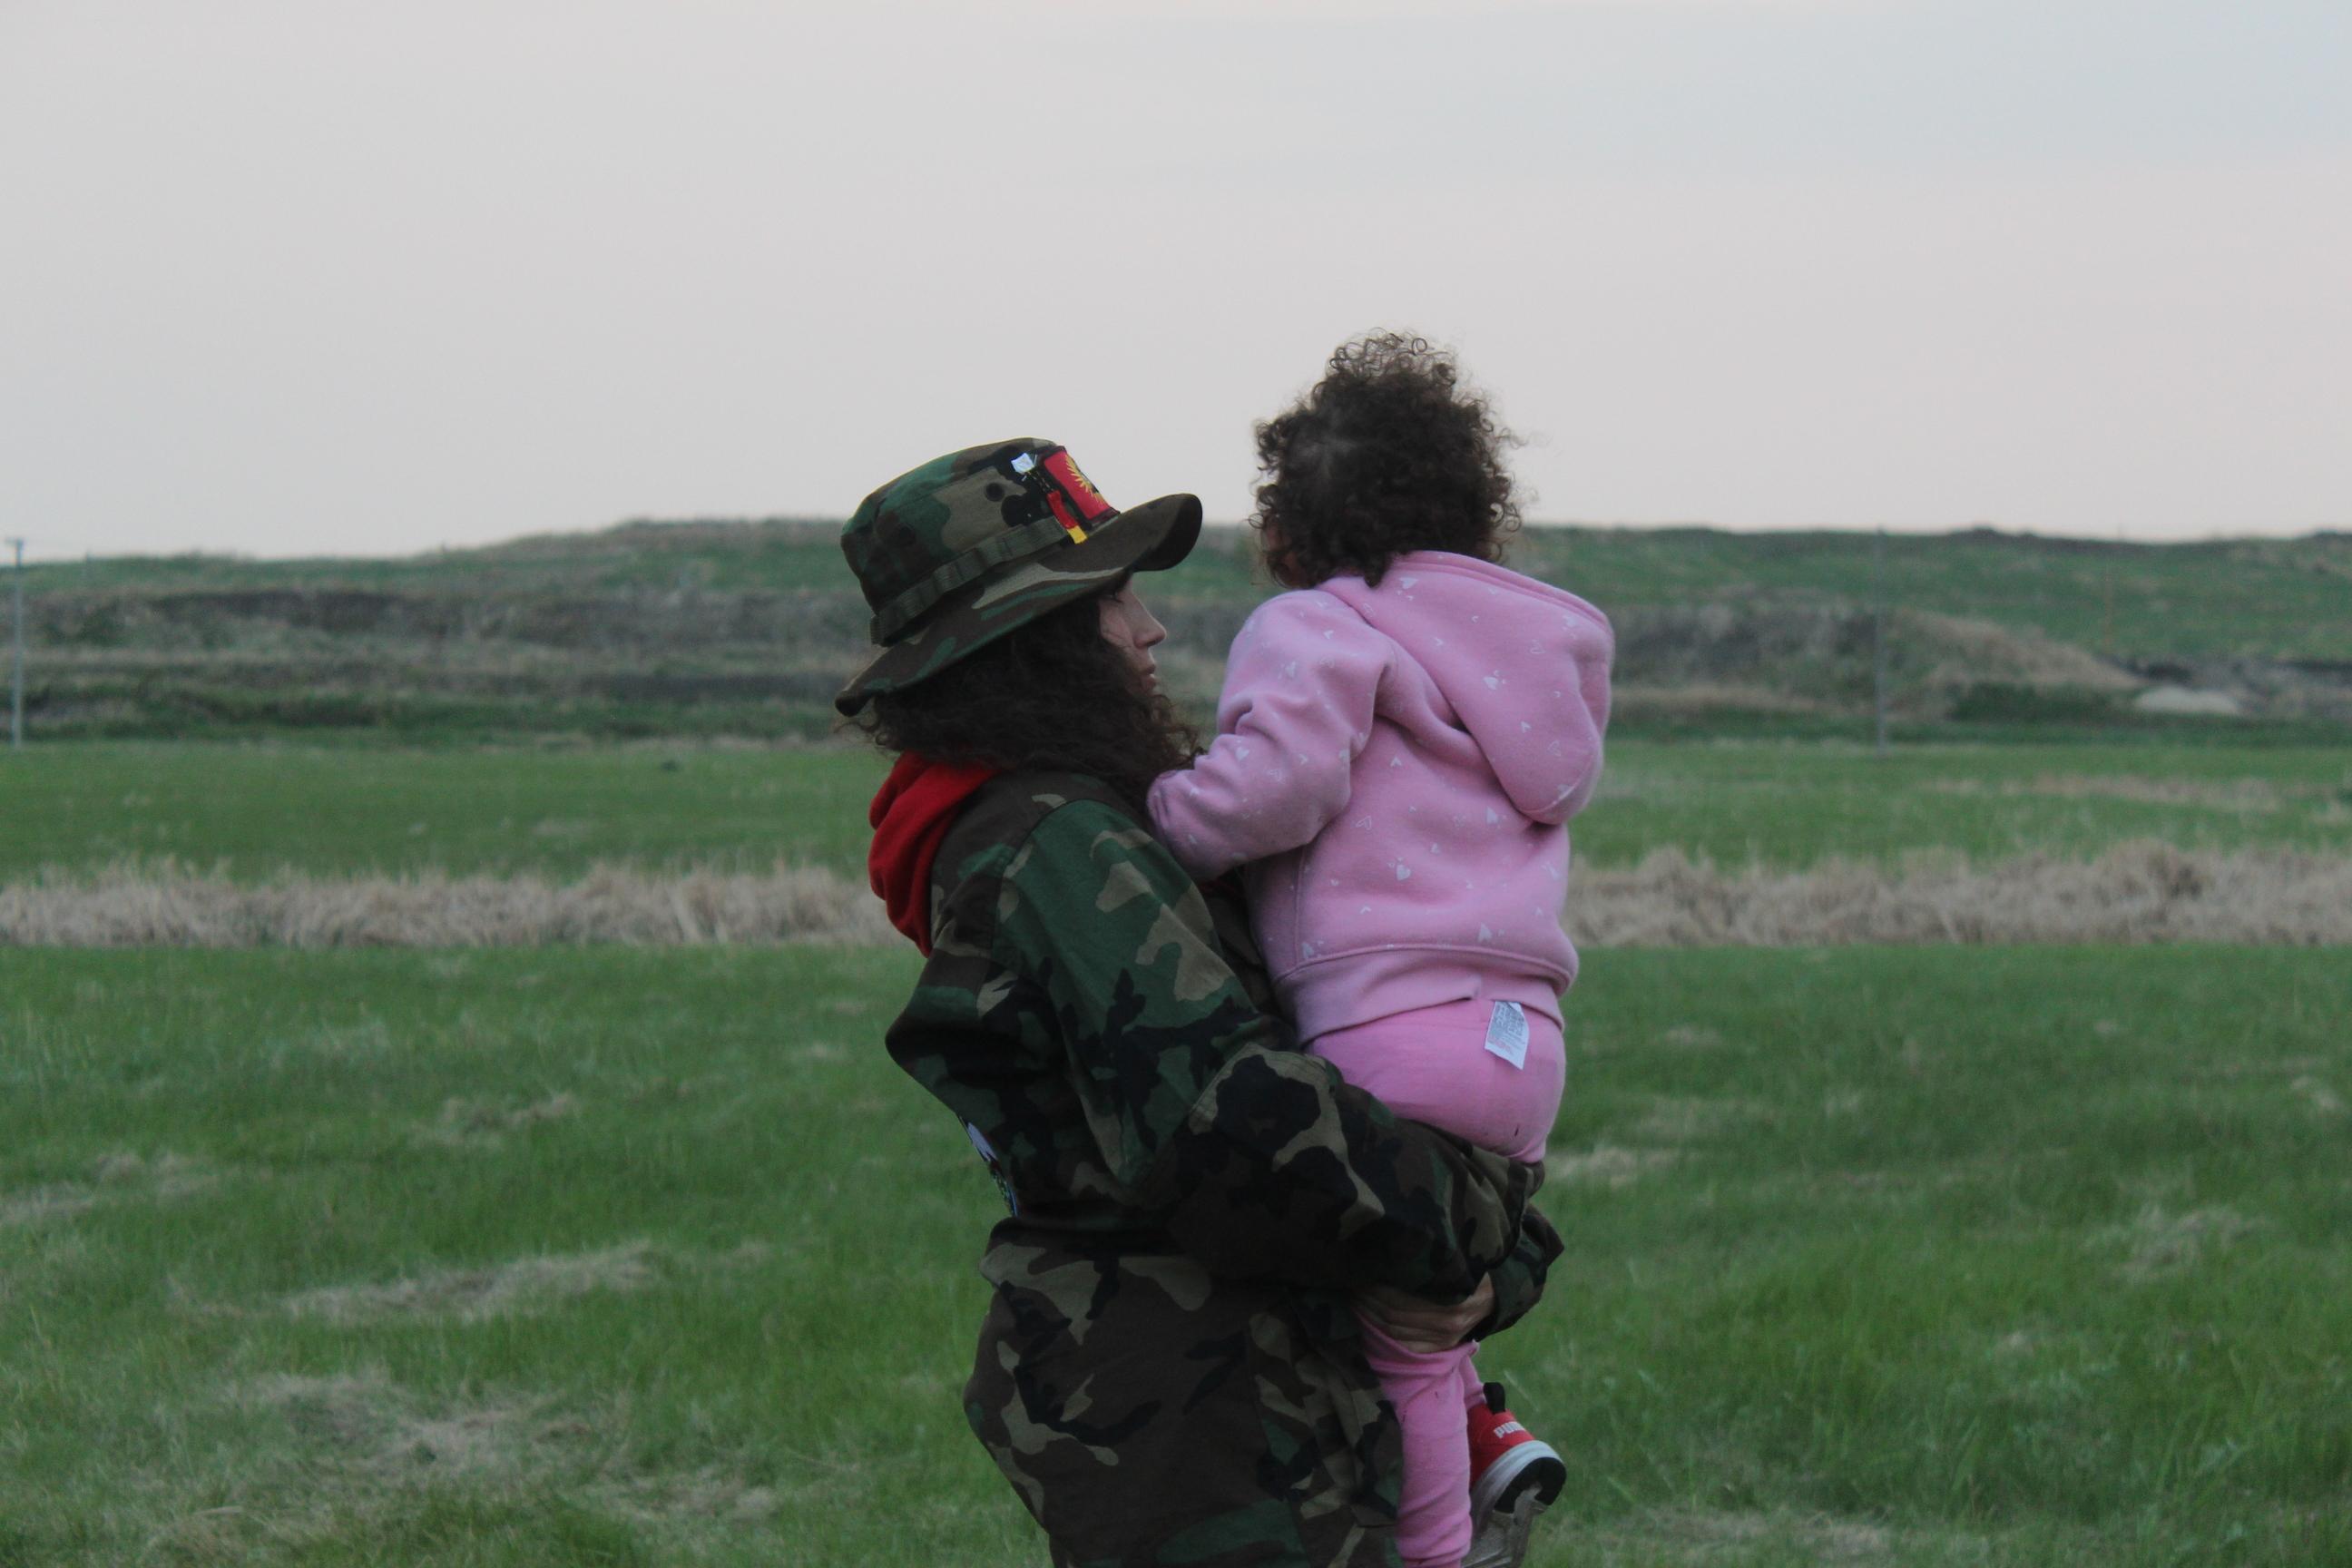 Cambria Harris con su hija en brazos.